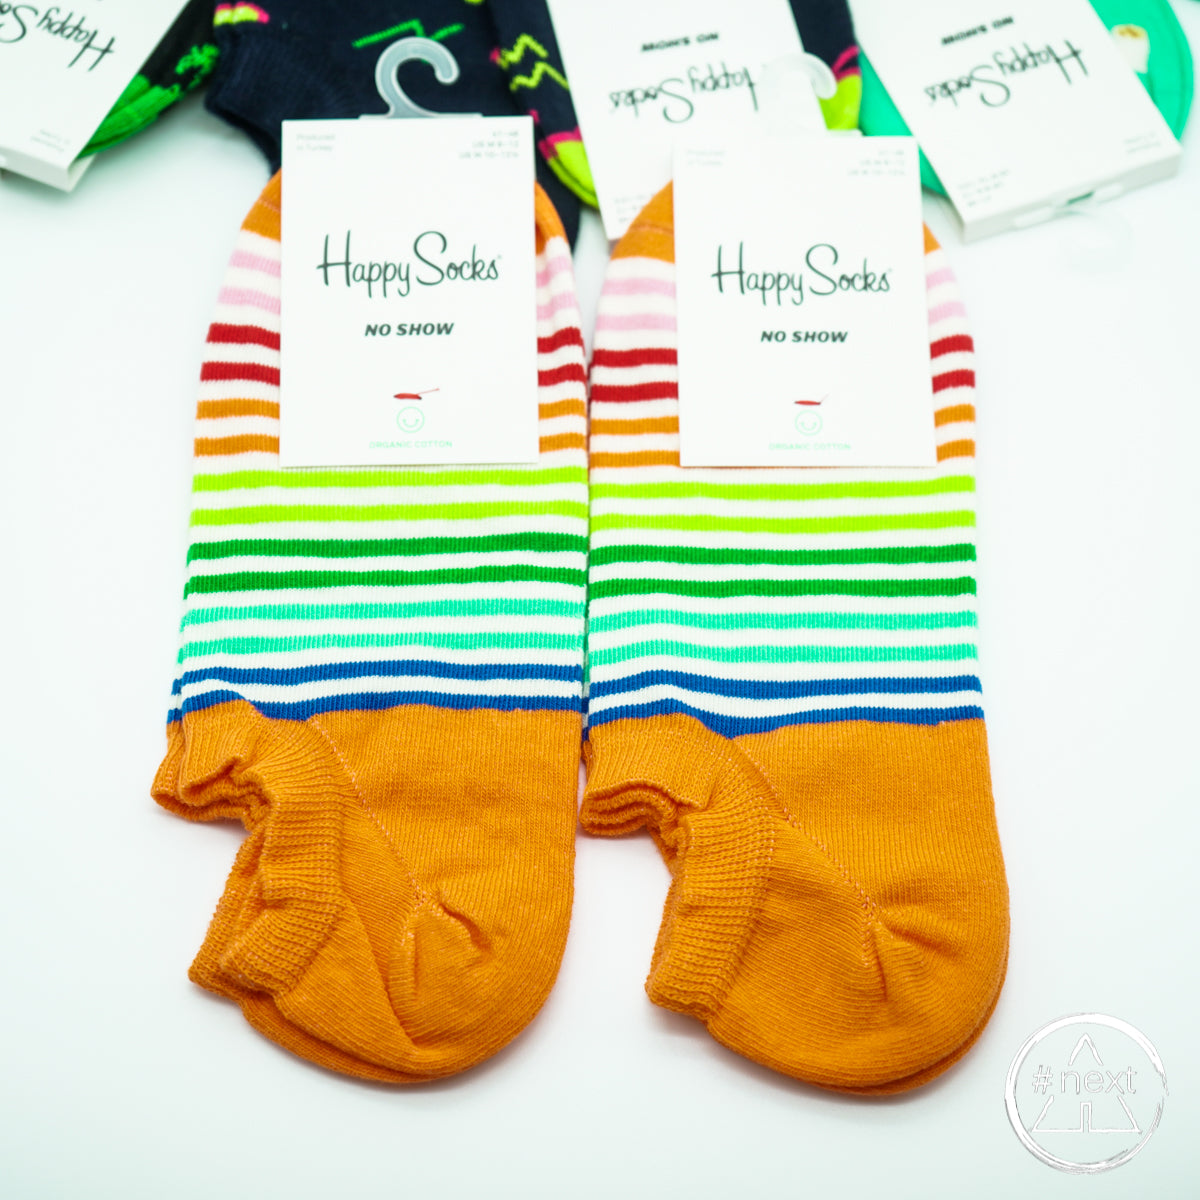 Happy Socks - Calza salvapiede - No show - Stripes - organic cotton - ANDY #NEXT